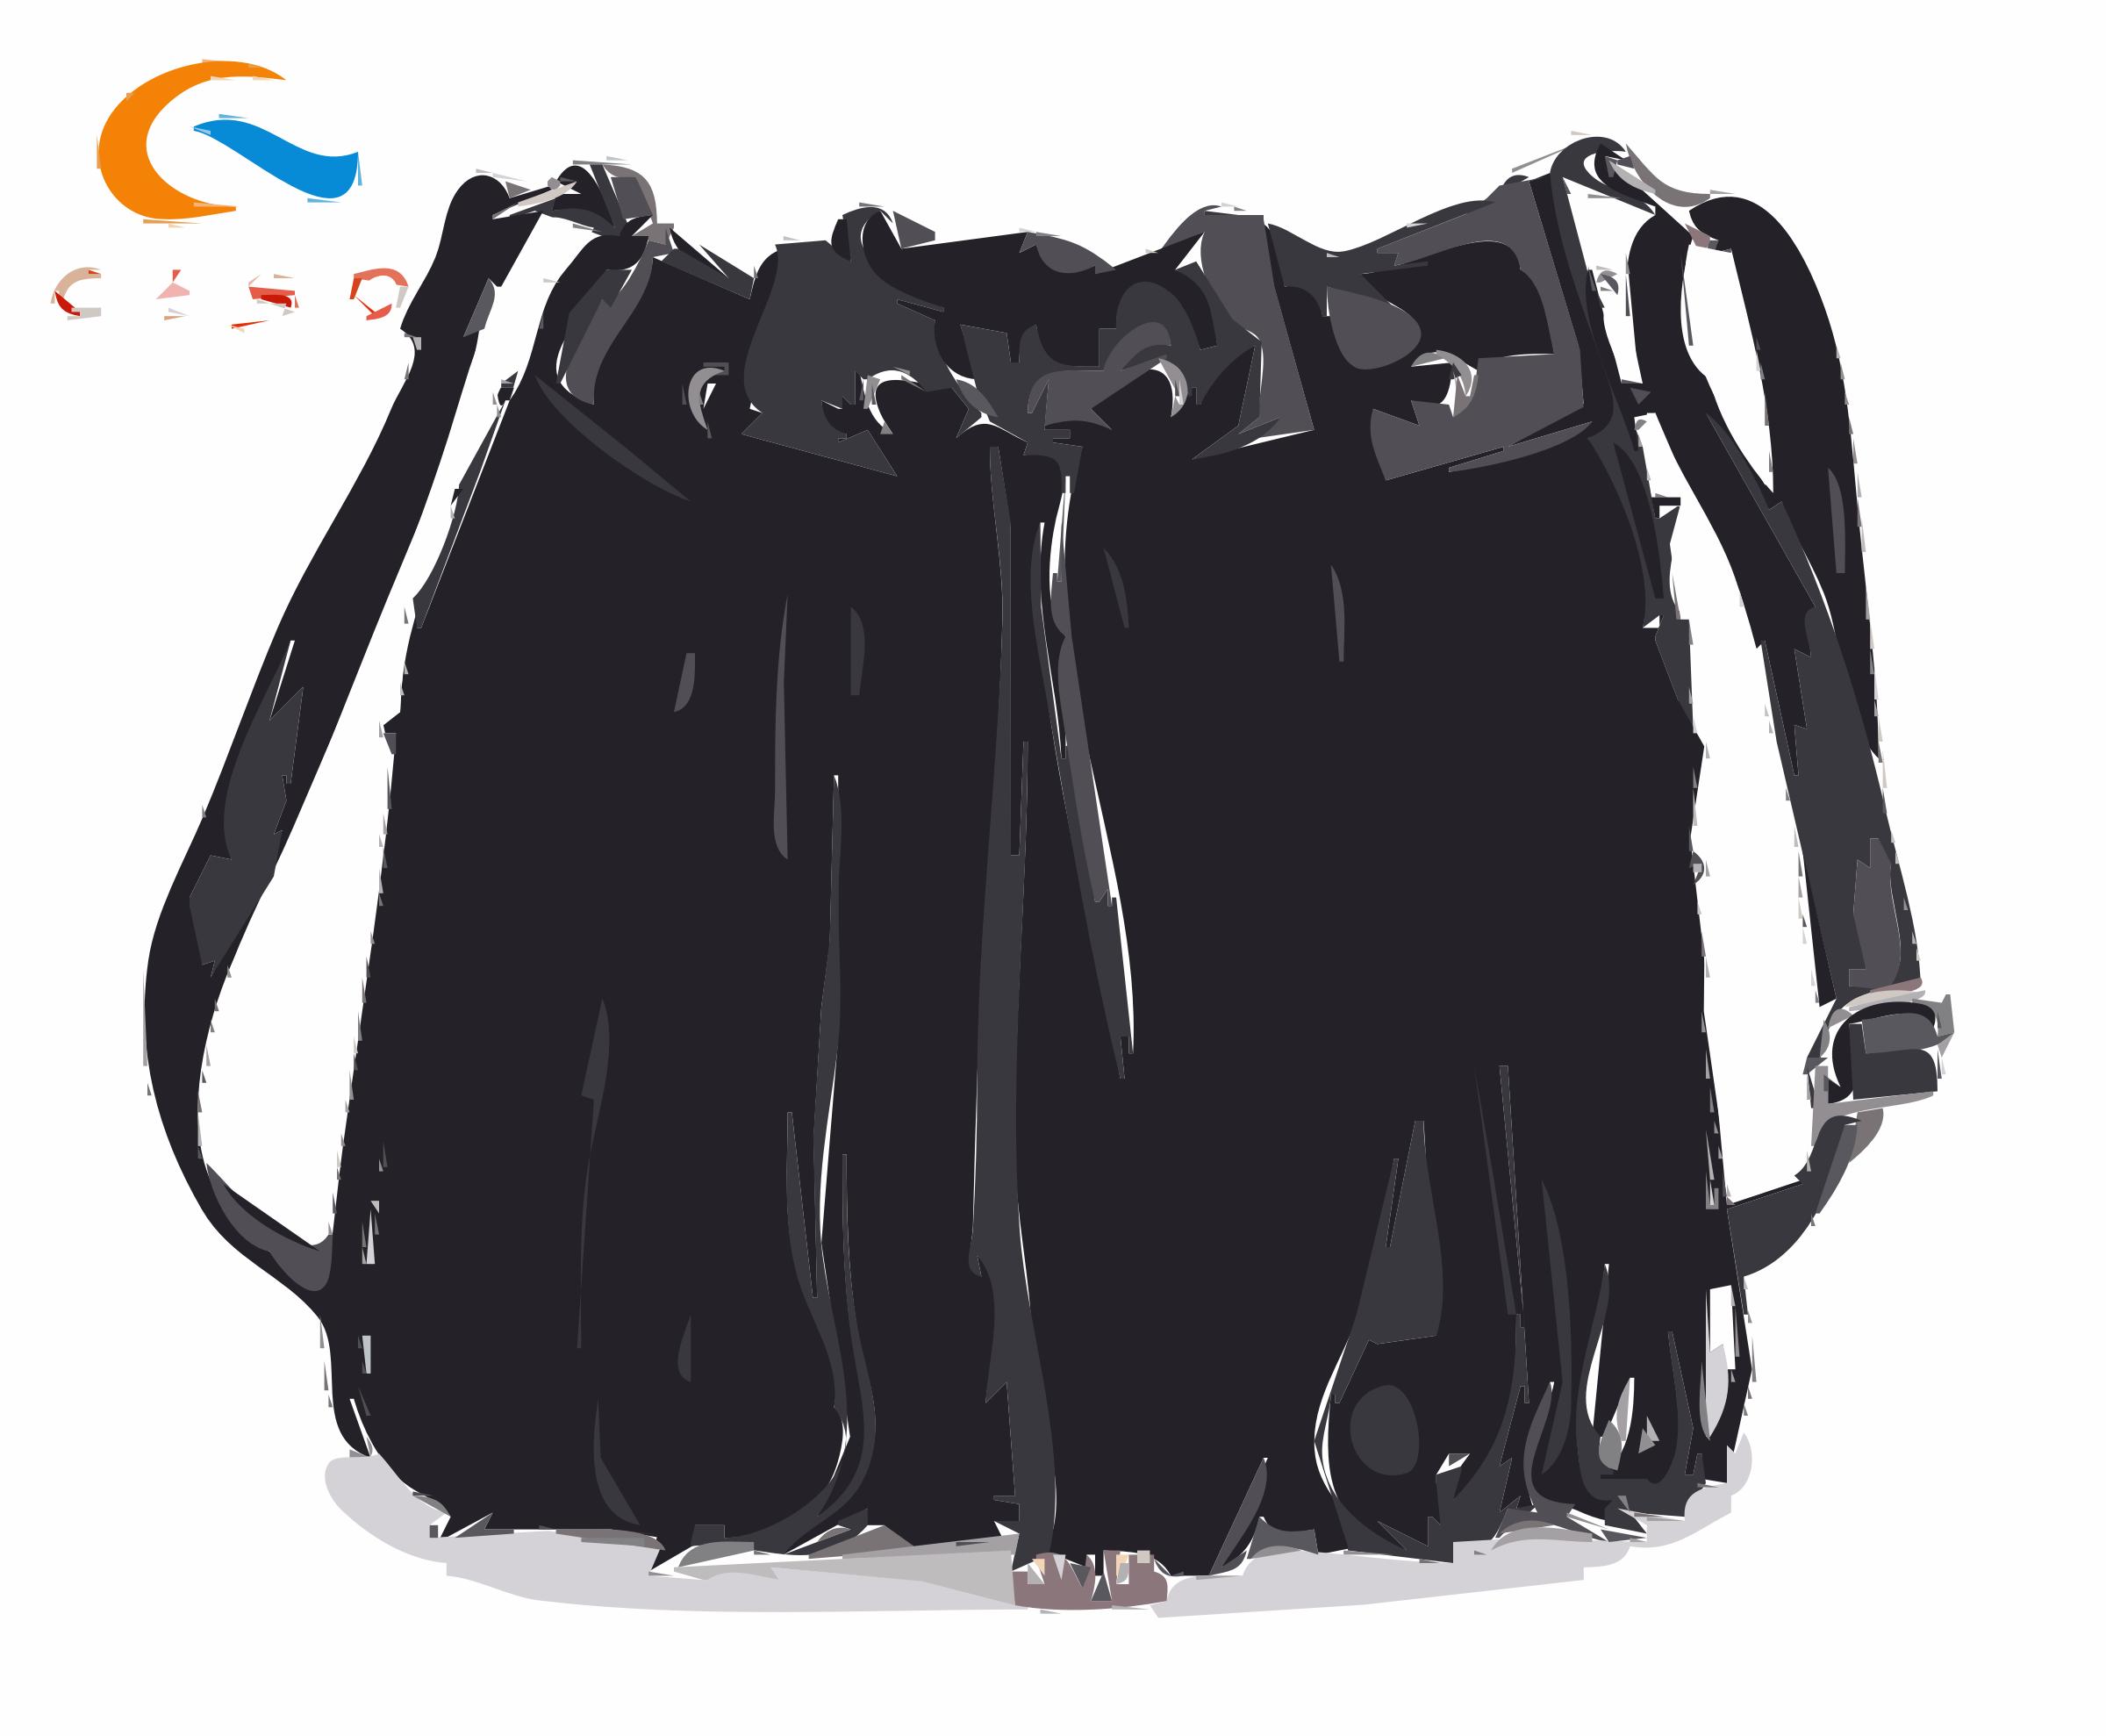 Black Tassled Leather Bag with Logo png